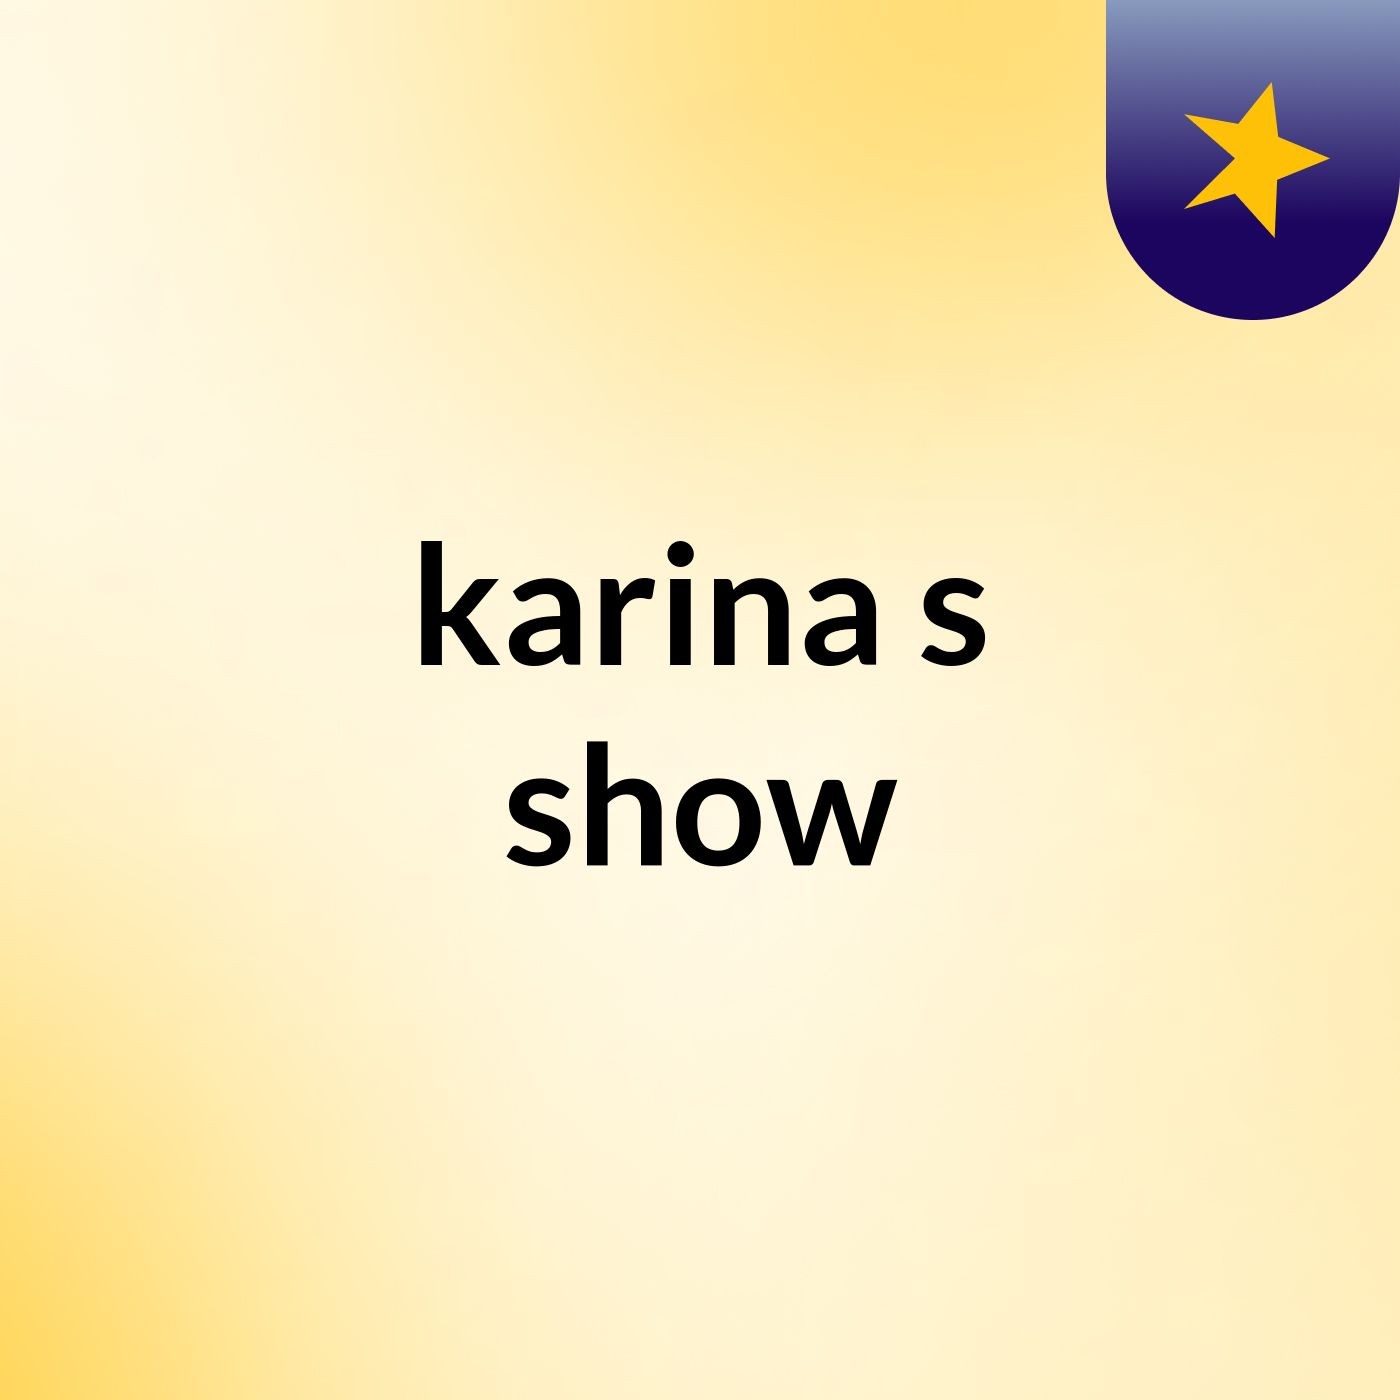 karina's show